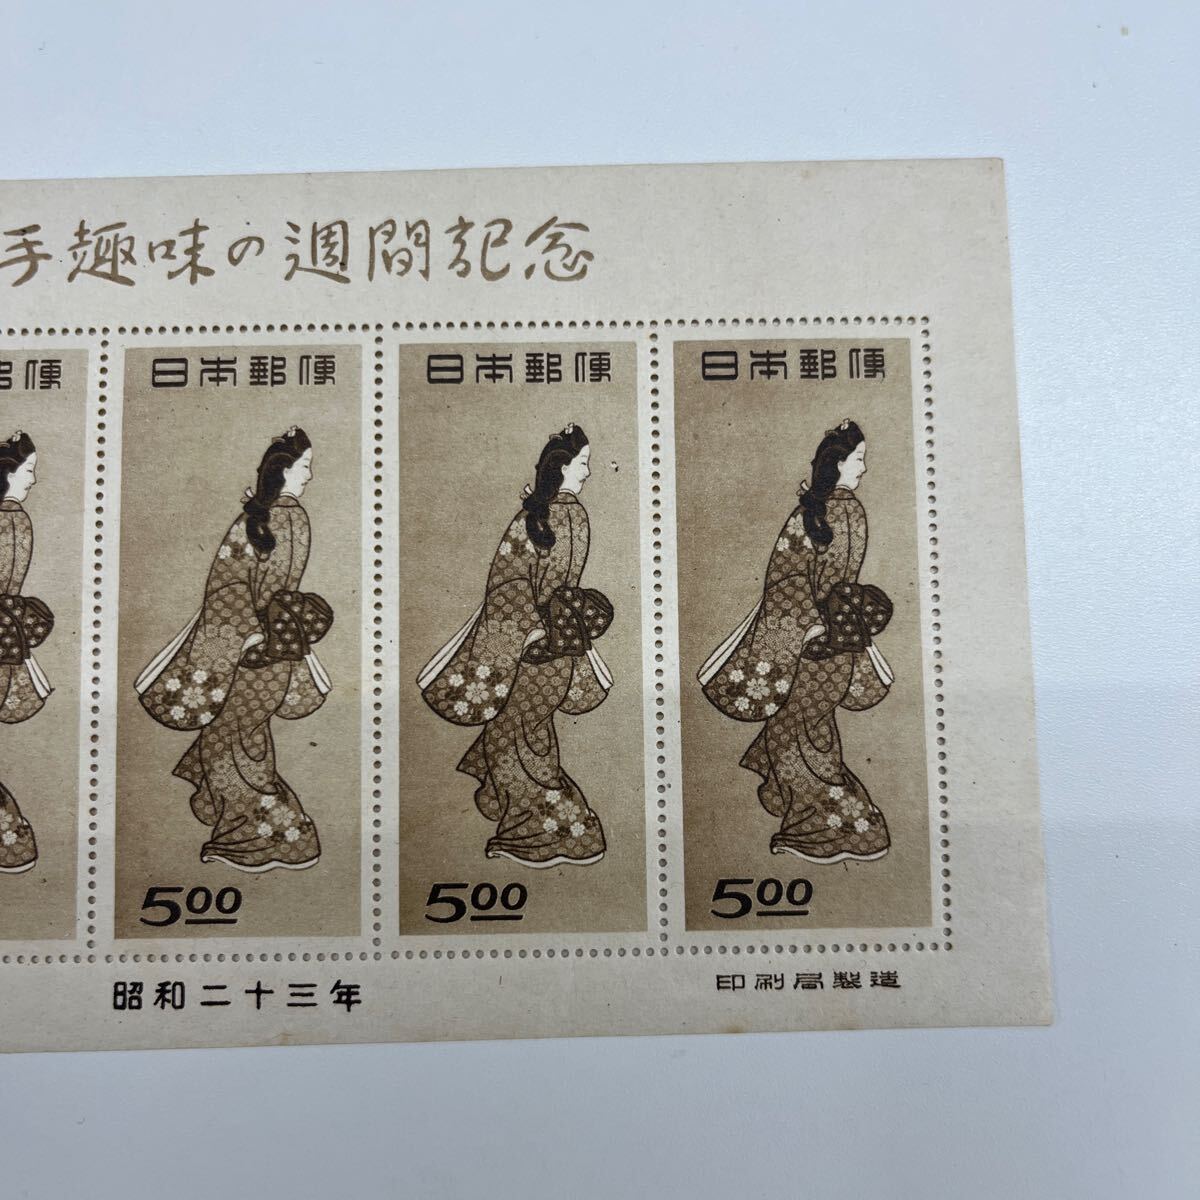 770. 日本切手 切手趣味週間 見返り美人 切手 5円 昭和23年 シートの画像6